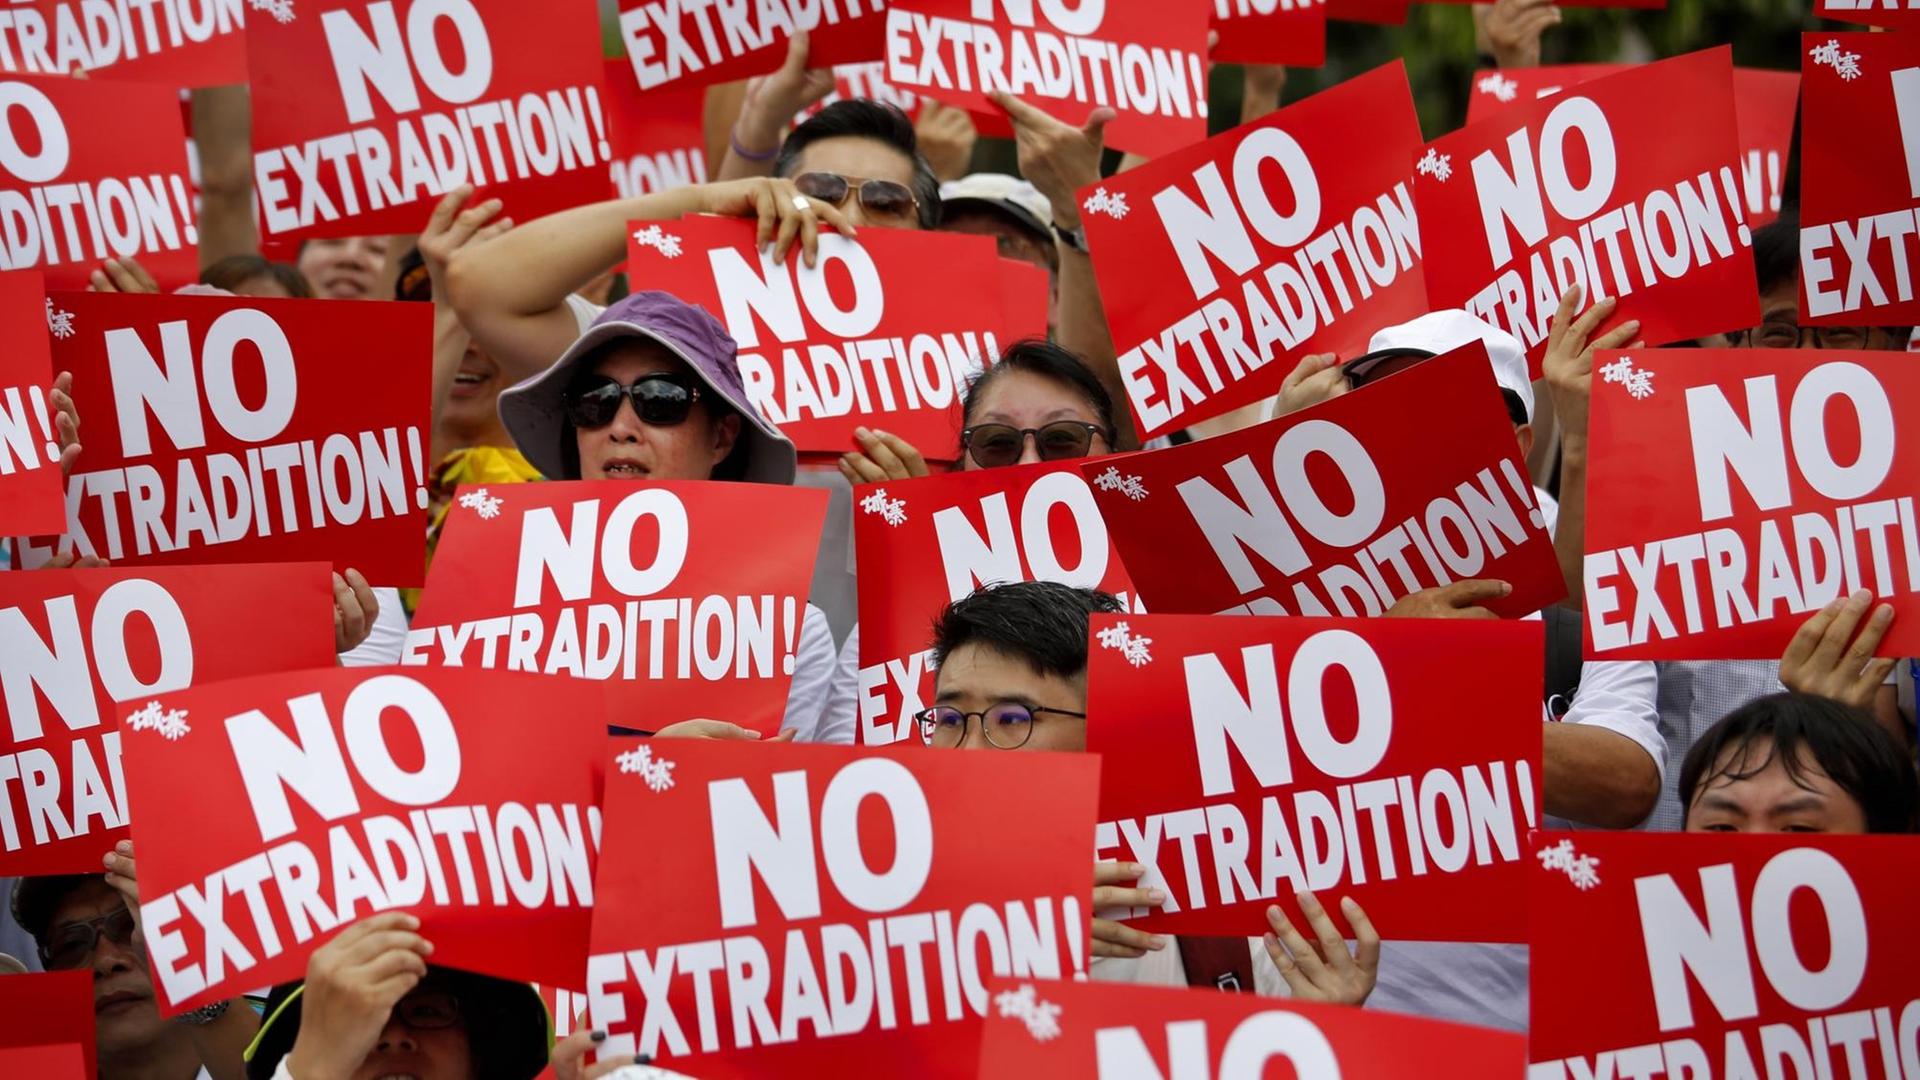 Demonstranten in Hongkong halten Plakate in die Höhe mit der Aufschrift: "No Extradition!" (Keine Auslieferung) anlässlich einer Kundgebung gegen das von der Regierung geplante Auslieferungsgesetz.